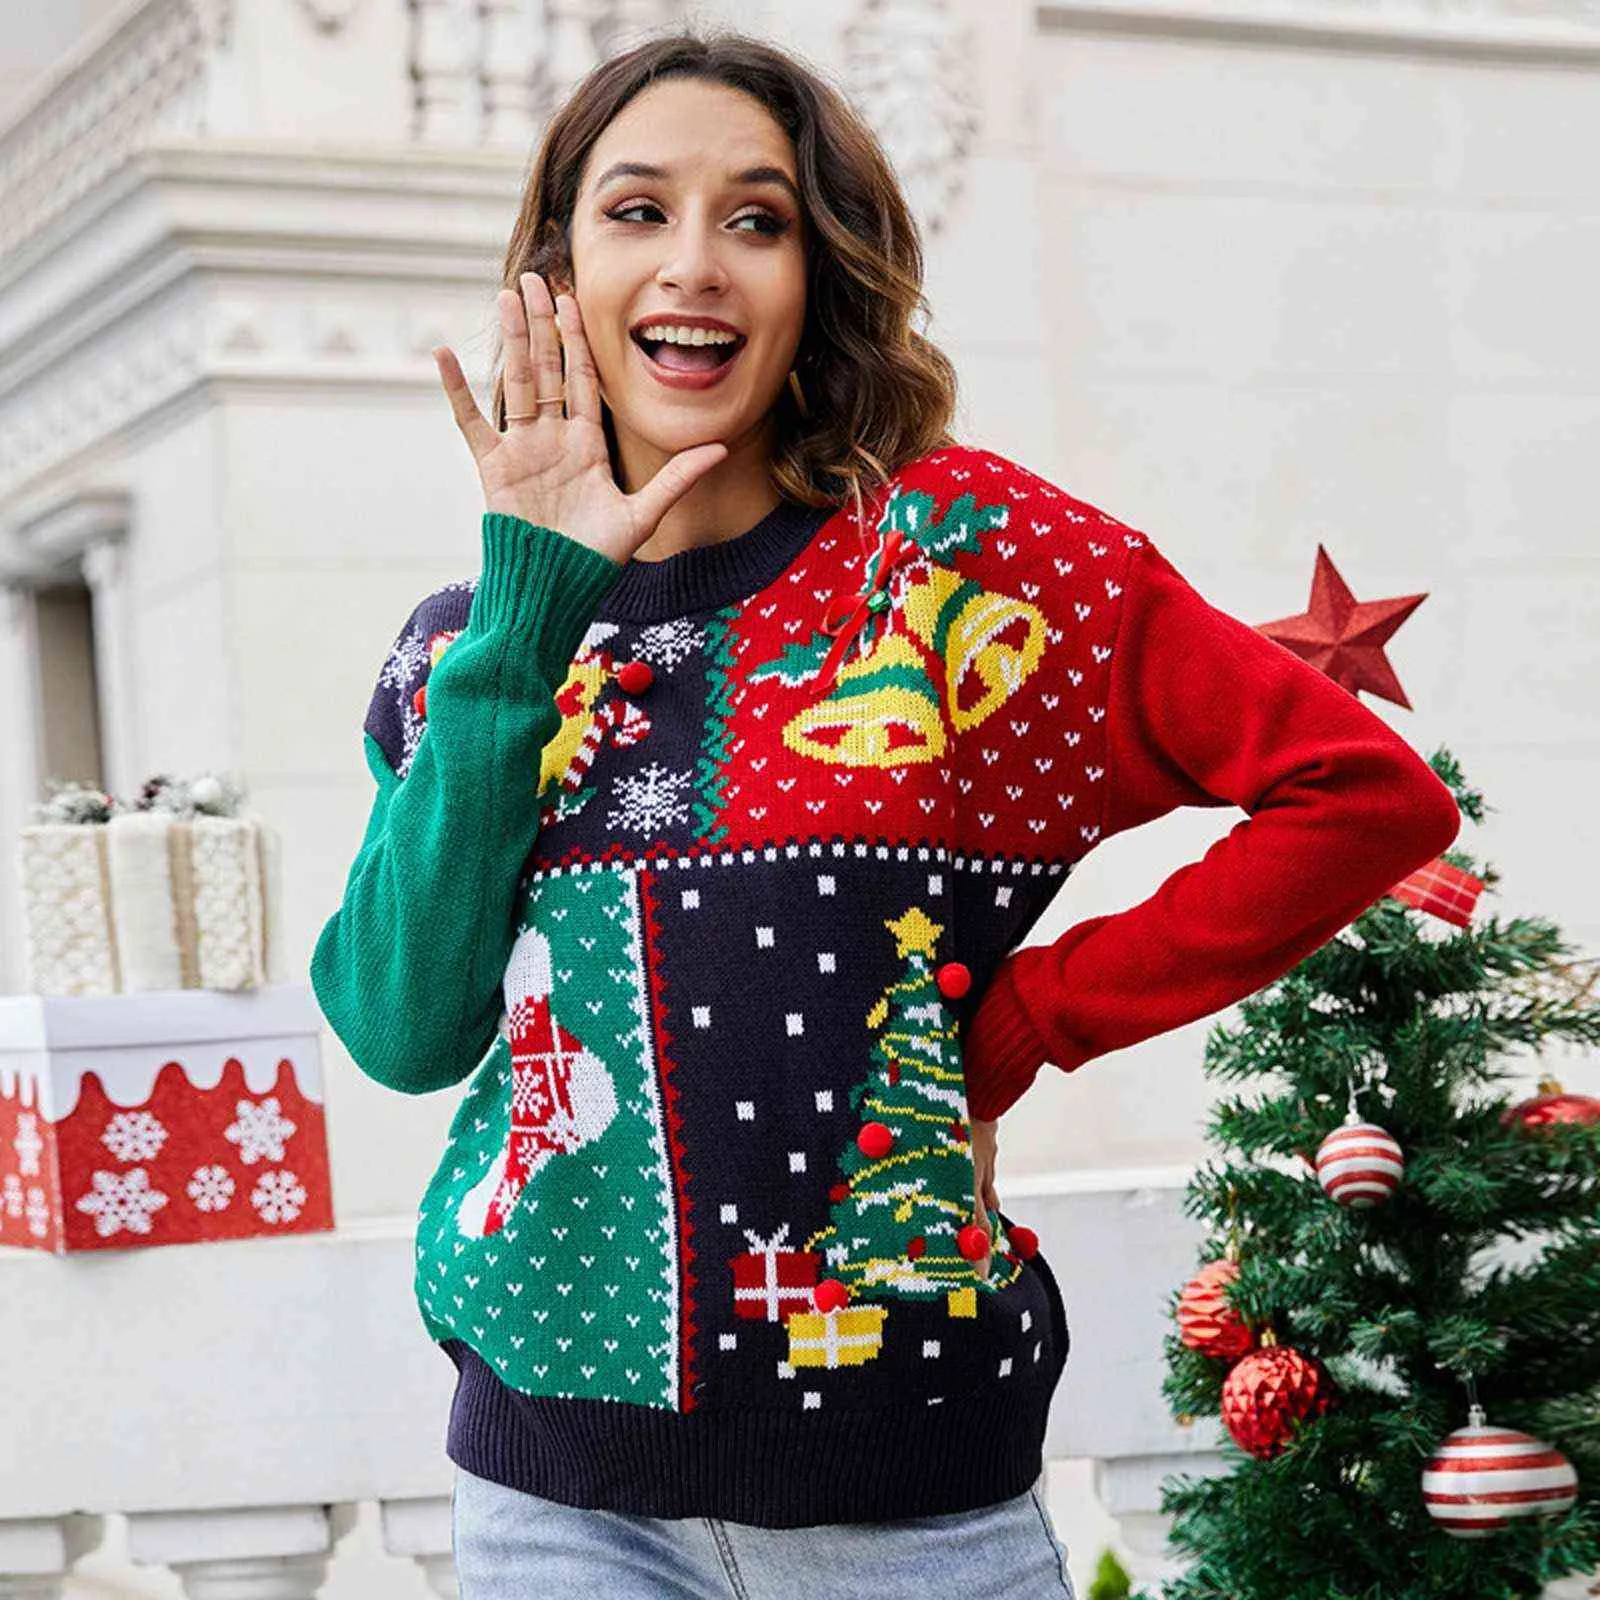 冬の女性の醜いクリスマスのセーターリトルスノーフレークニットドレスとクリスマスツリーのセーター胸の上に鐘が付いていますy1118